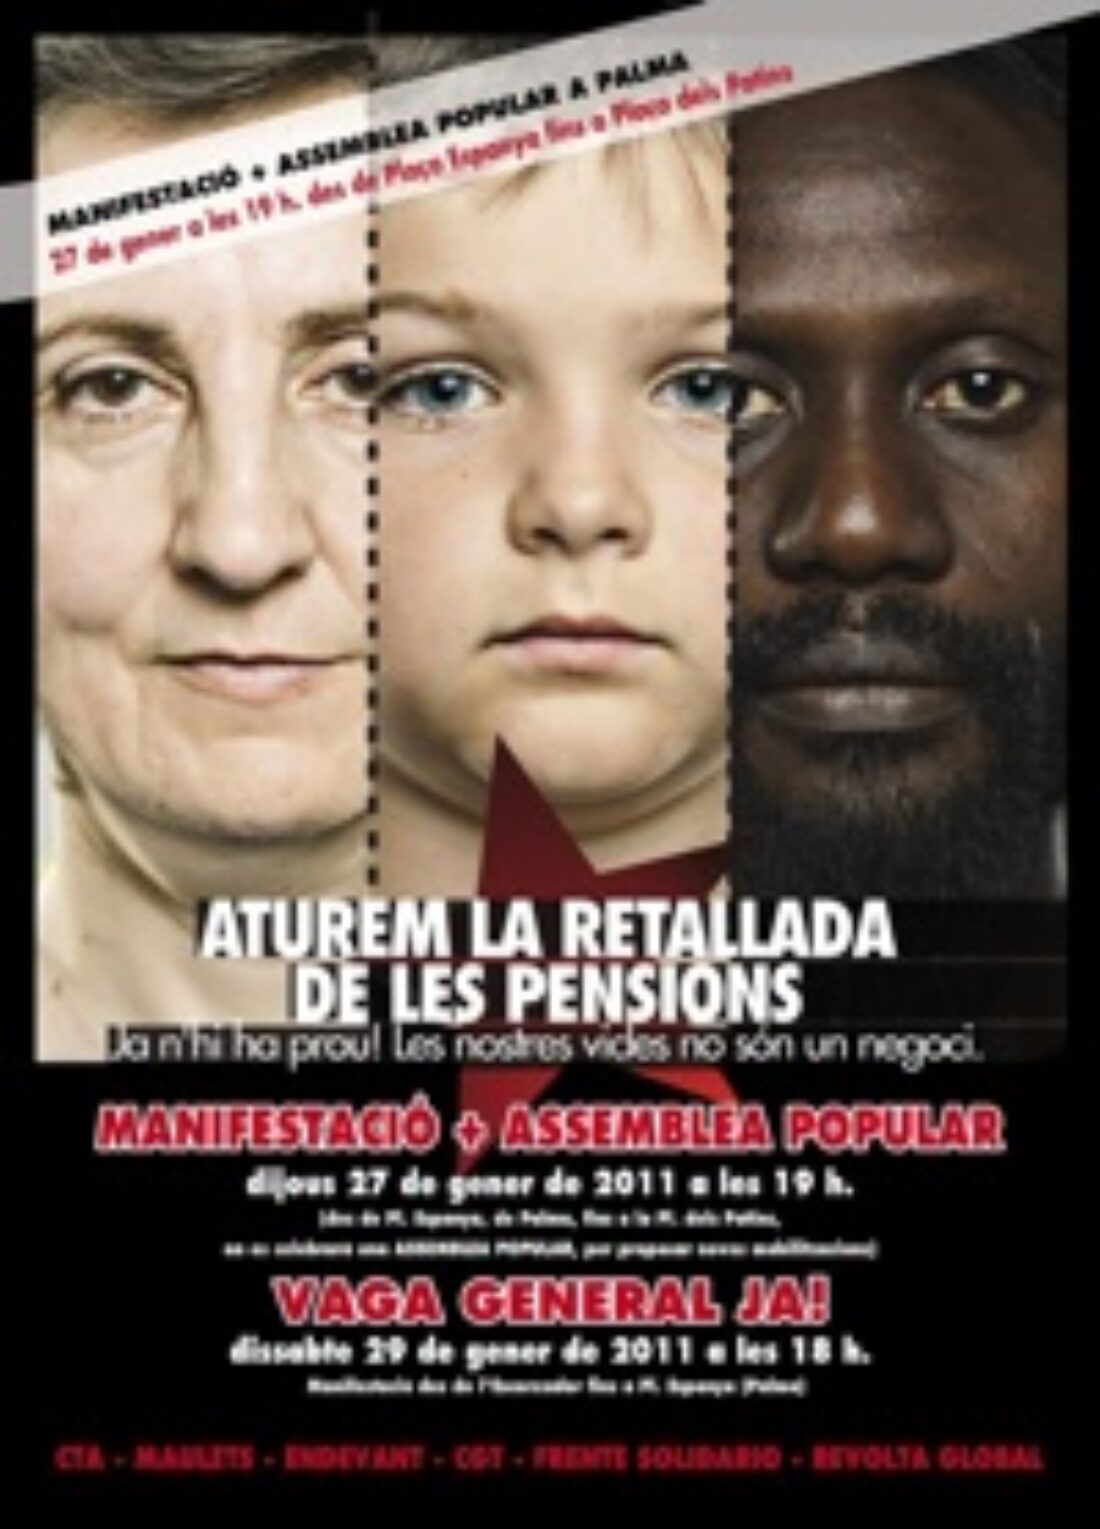 27 enero, Palma de Mallorca : Jornada de lucha contra el recorte de las pensiones